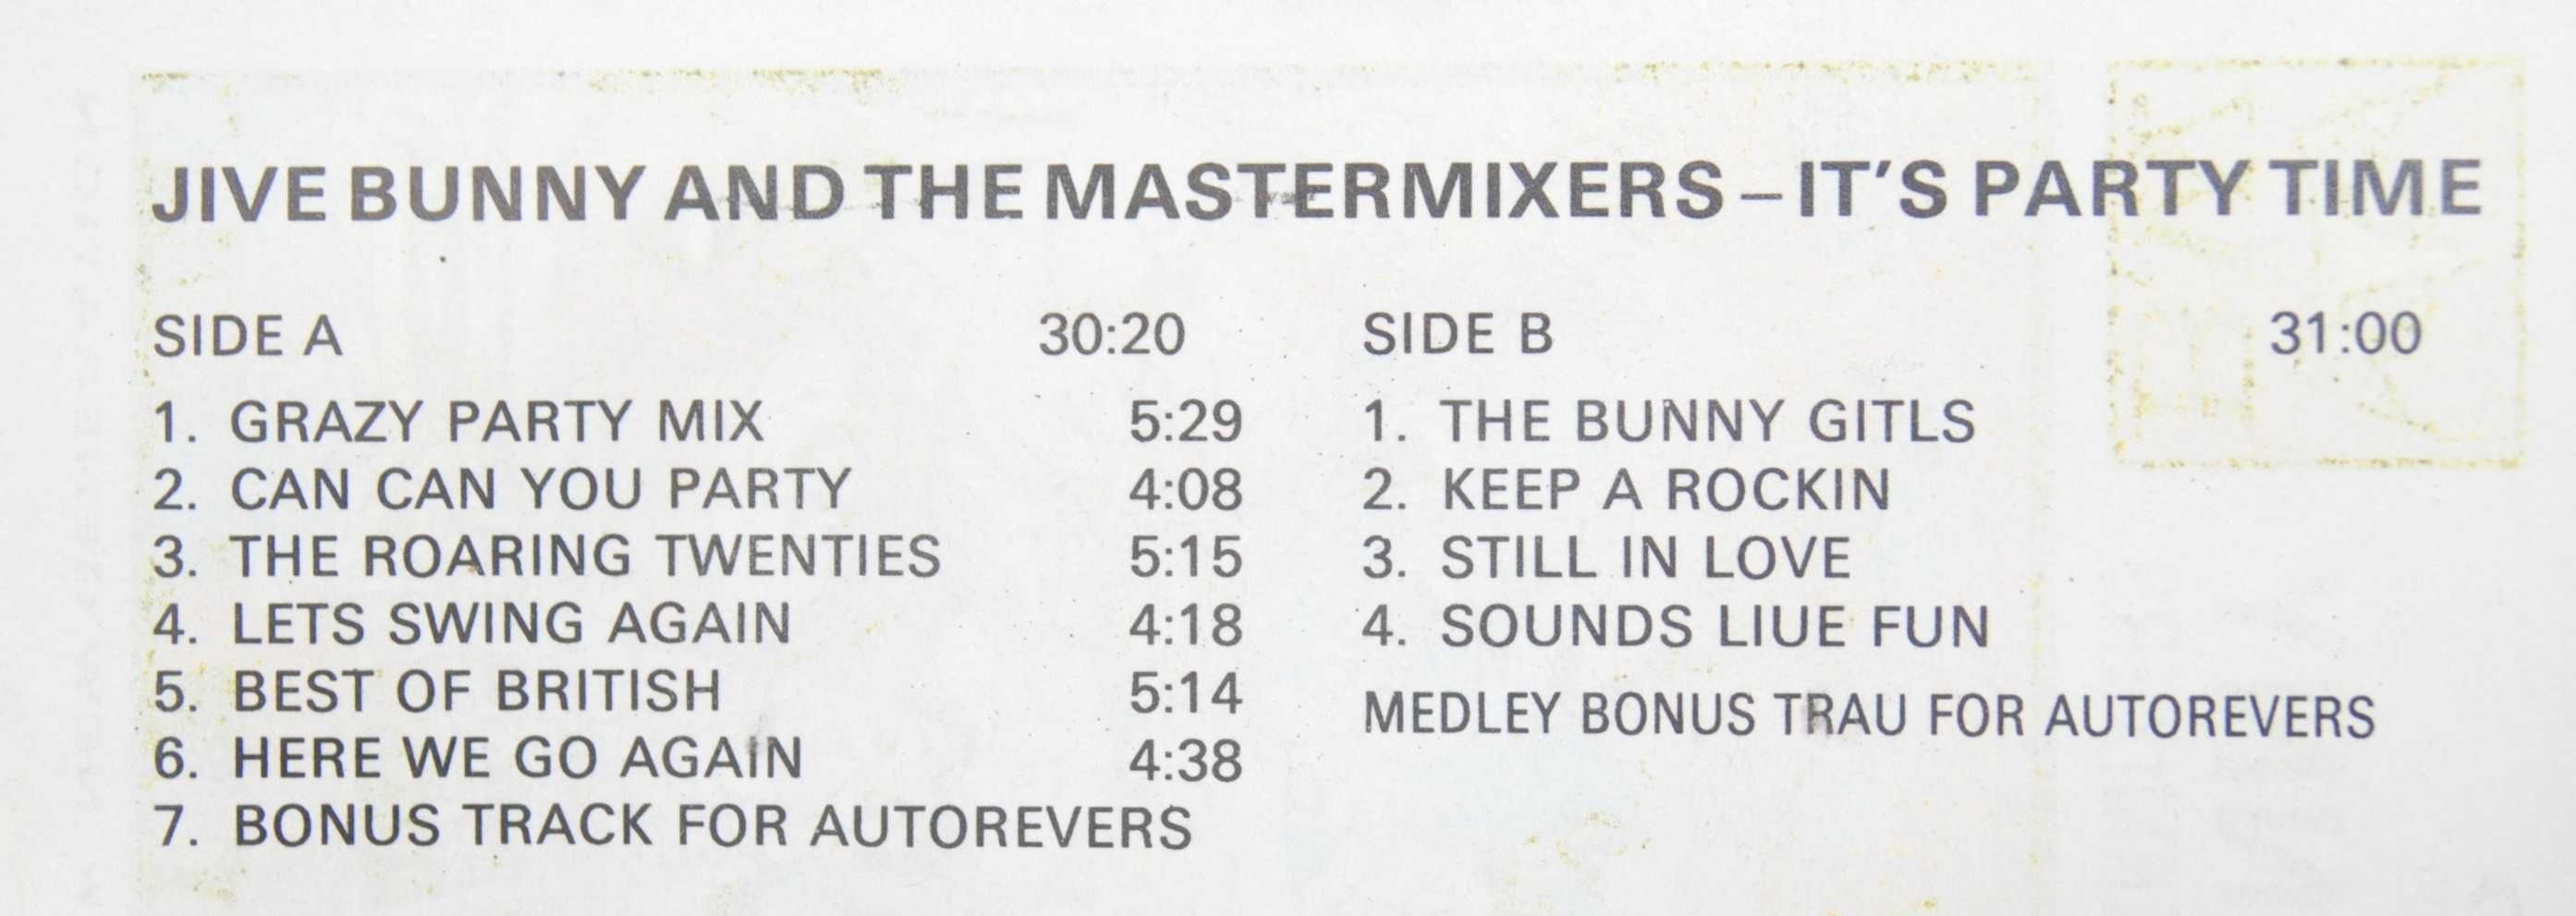 Stara kaseta magnetofonowa Jive Bunny and The Mastermixers it's party